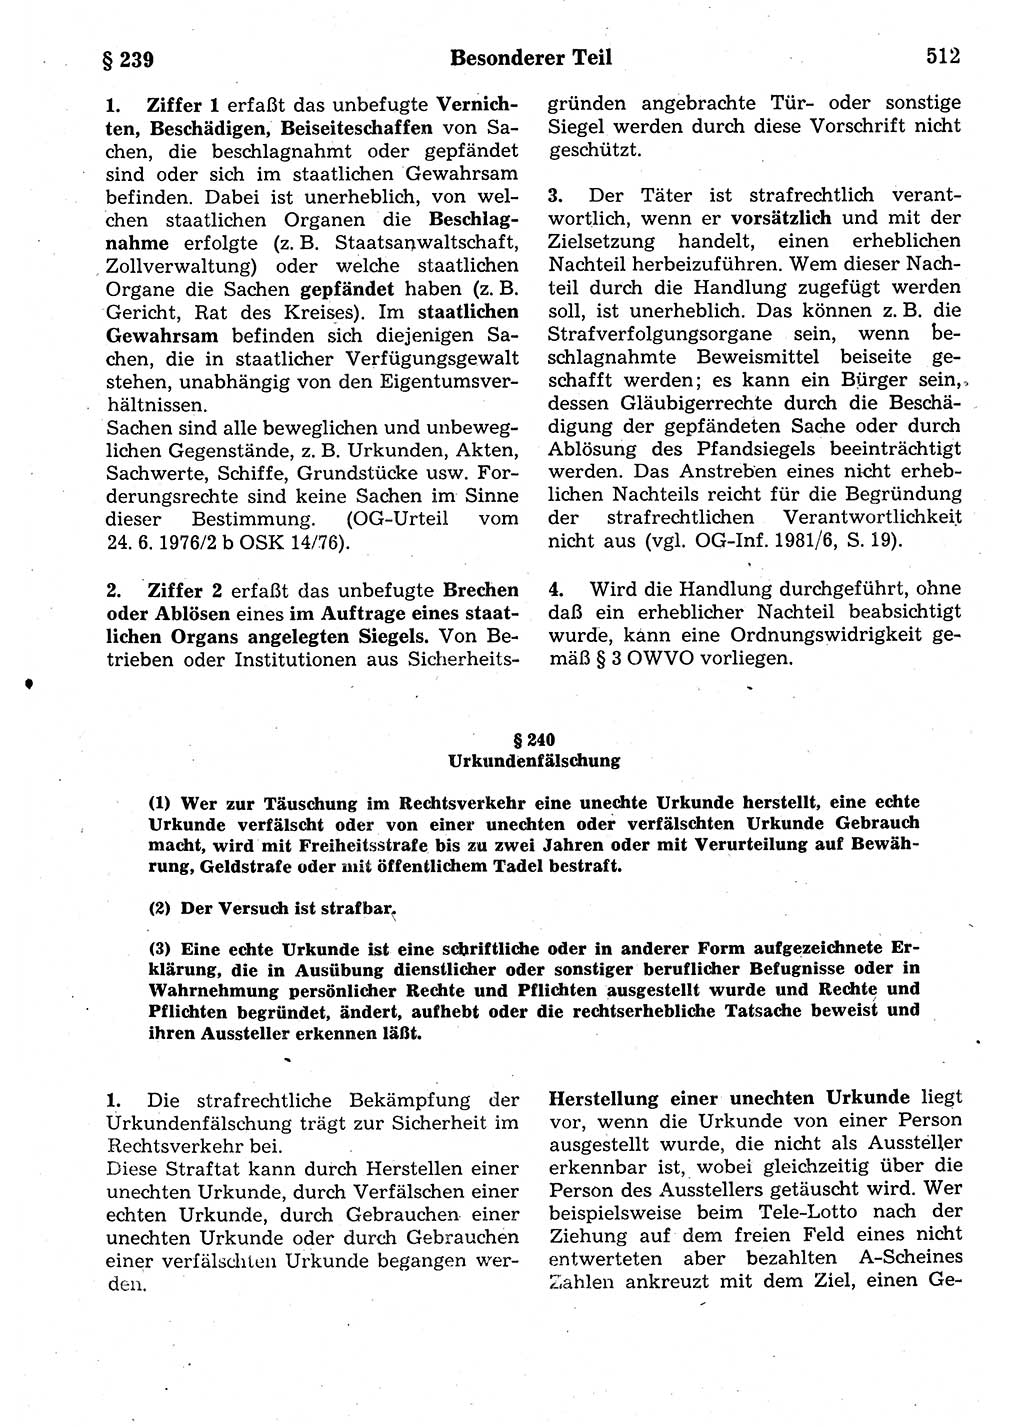 Strafrecht der Deutschen Demokratischen Republik (DDR), Kommentar zum Strafgesetzbuch (StGB) 1987, Seite 512 (Strafr. DDR Komm. StGB 1987, S. 512)